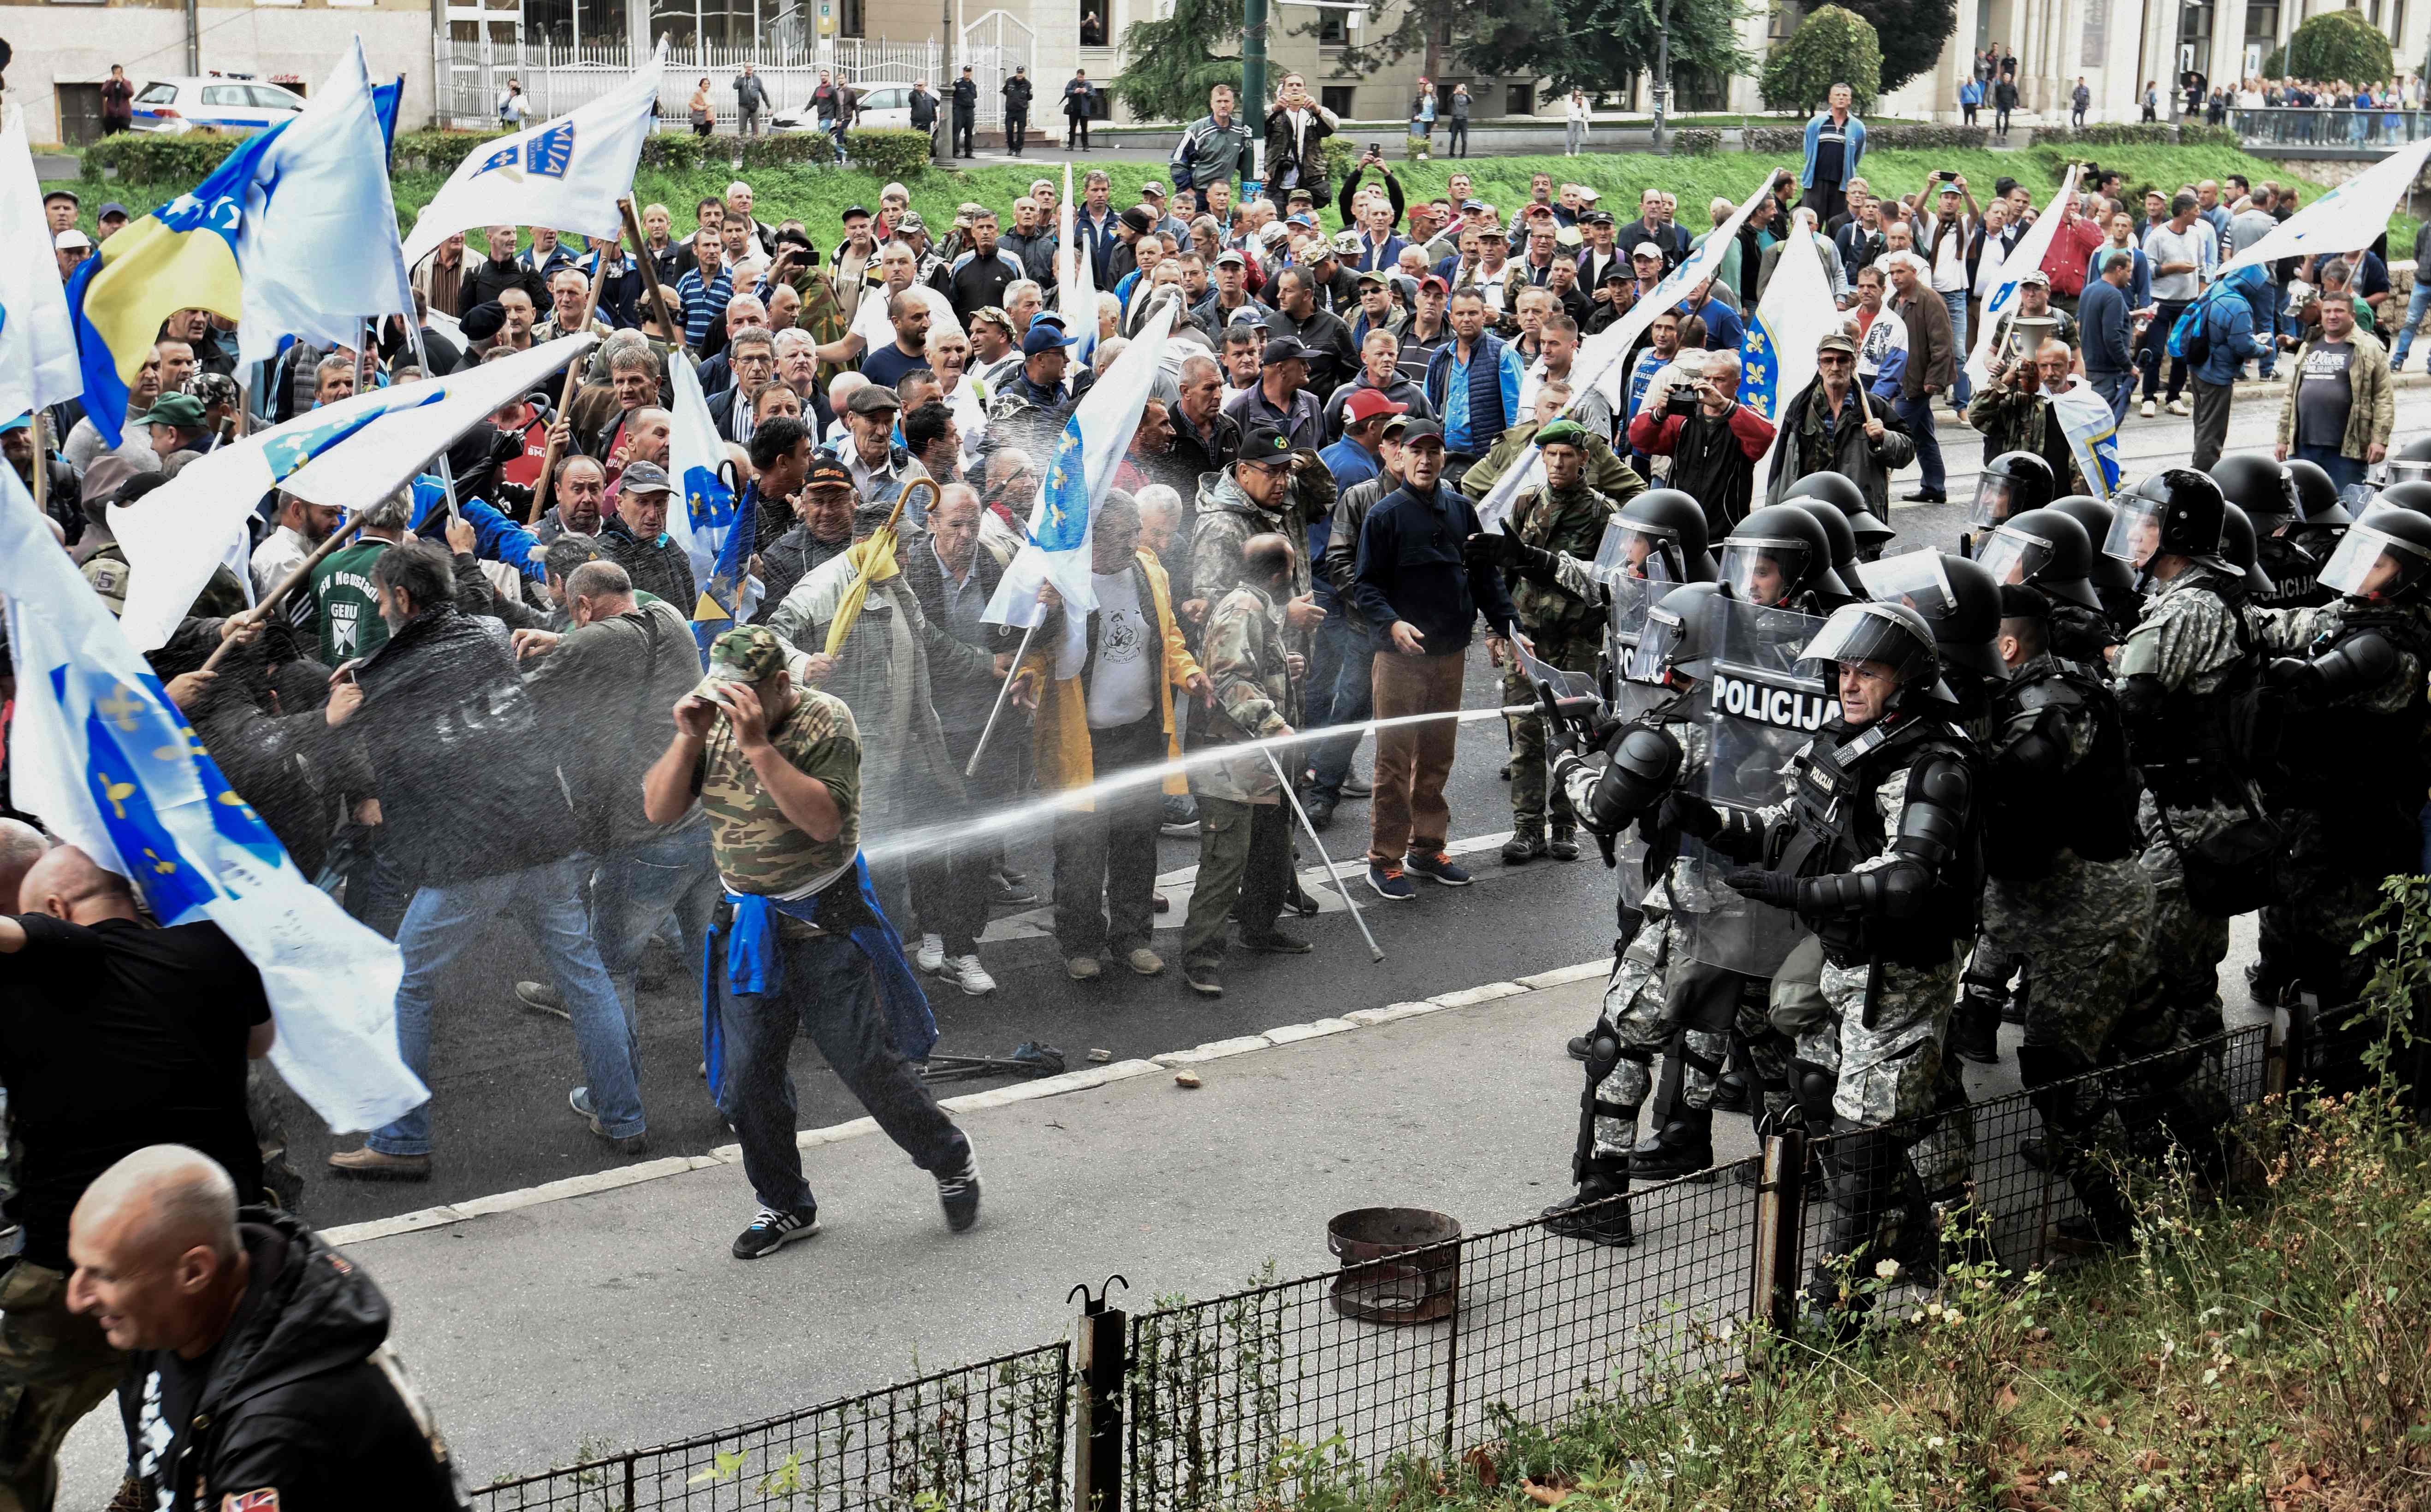 صور.. شرطة البوسنة تشتبك مع مئات من المحاربين القدماء بالعاصمة سراييفو  1435392-البوسنة-(1)